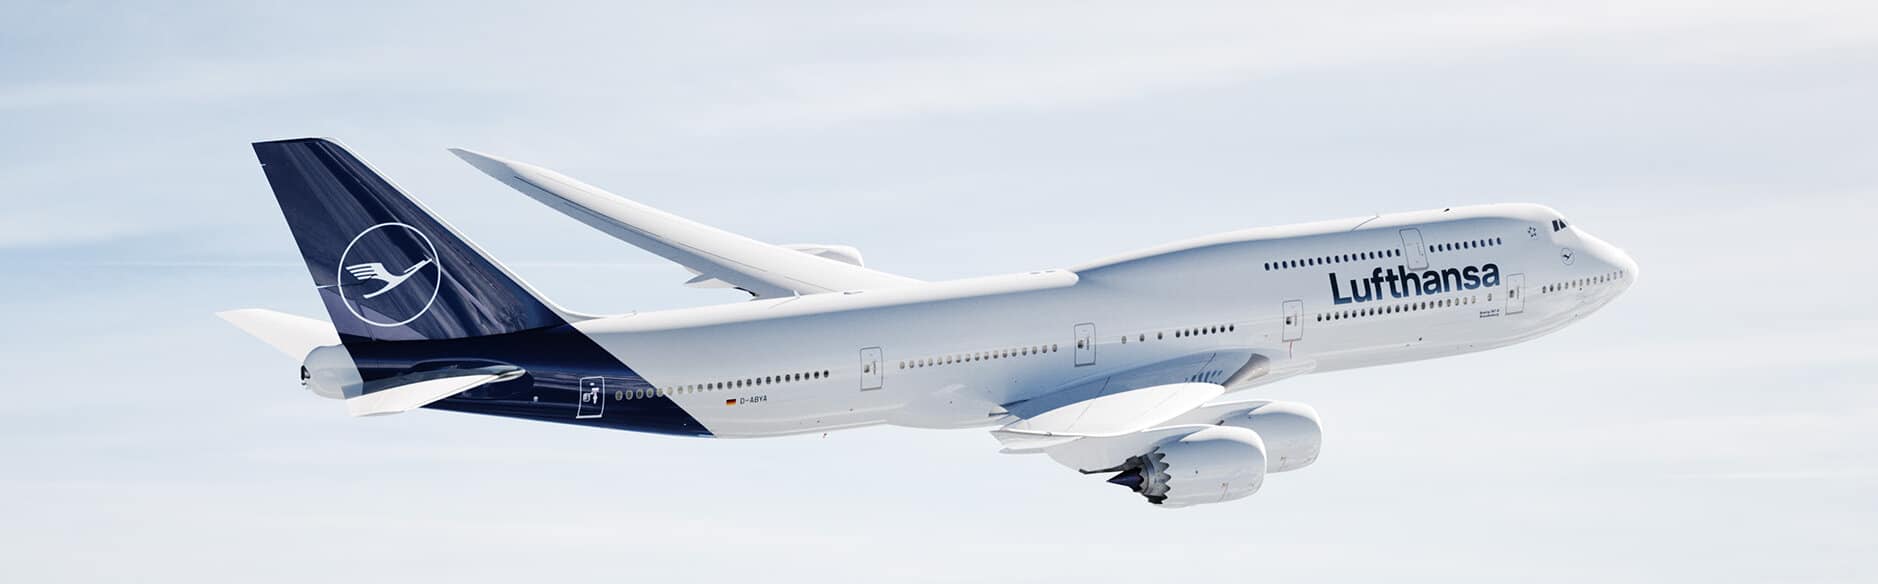 Lufthanasa Boeing 747 Jumbo